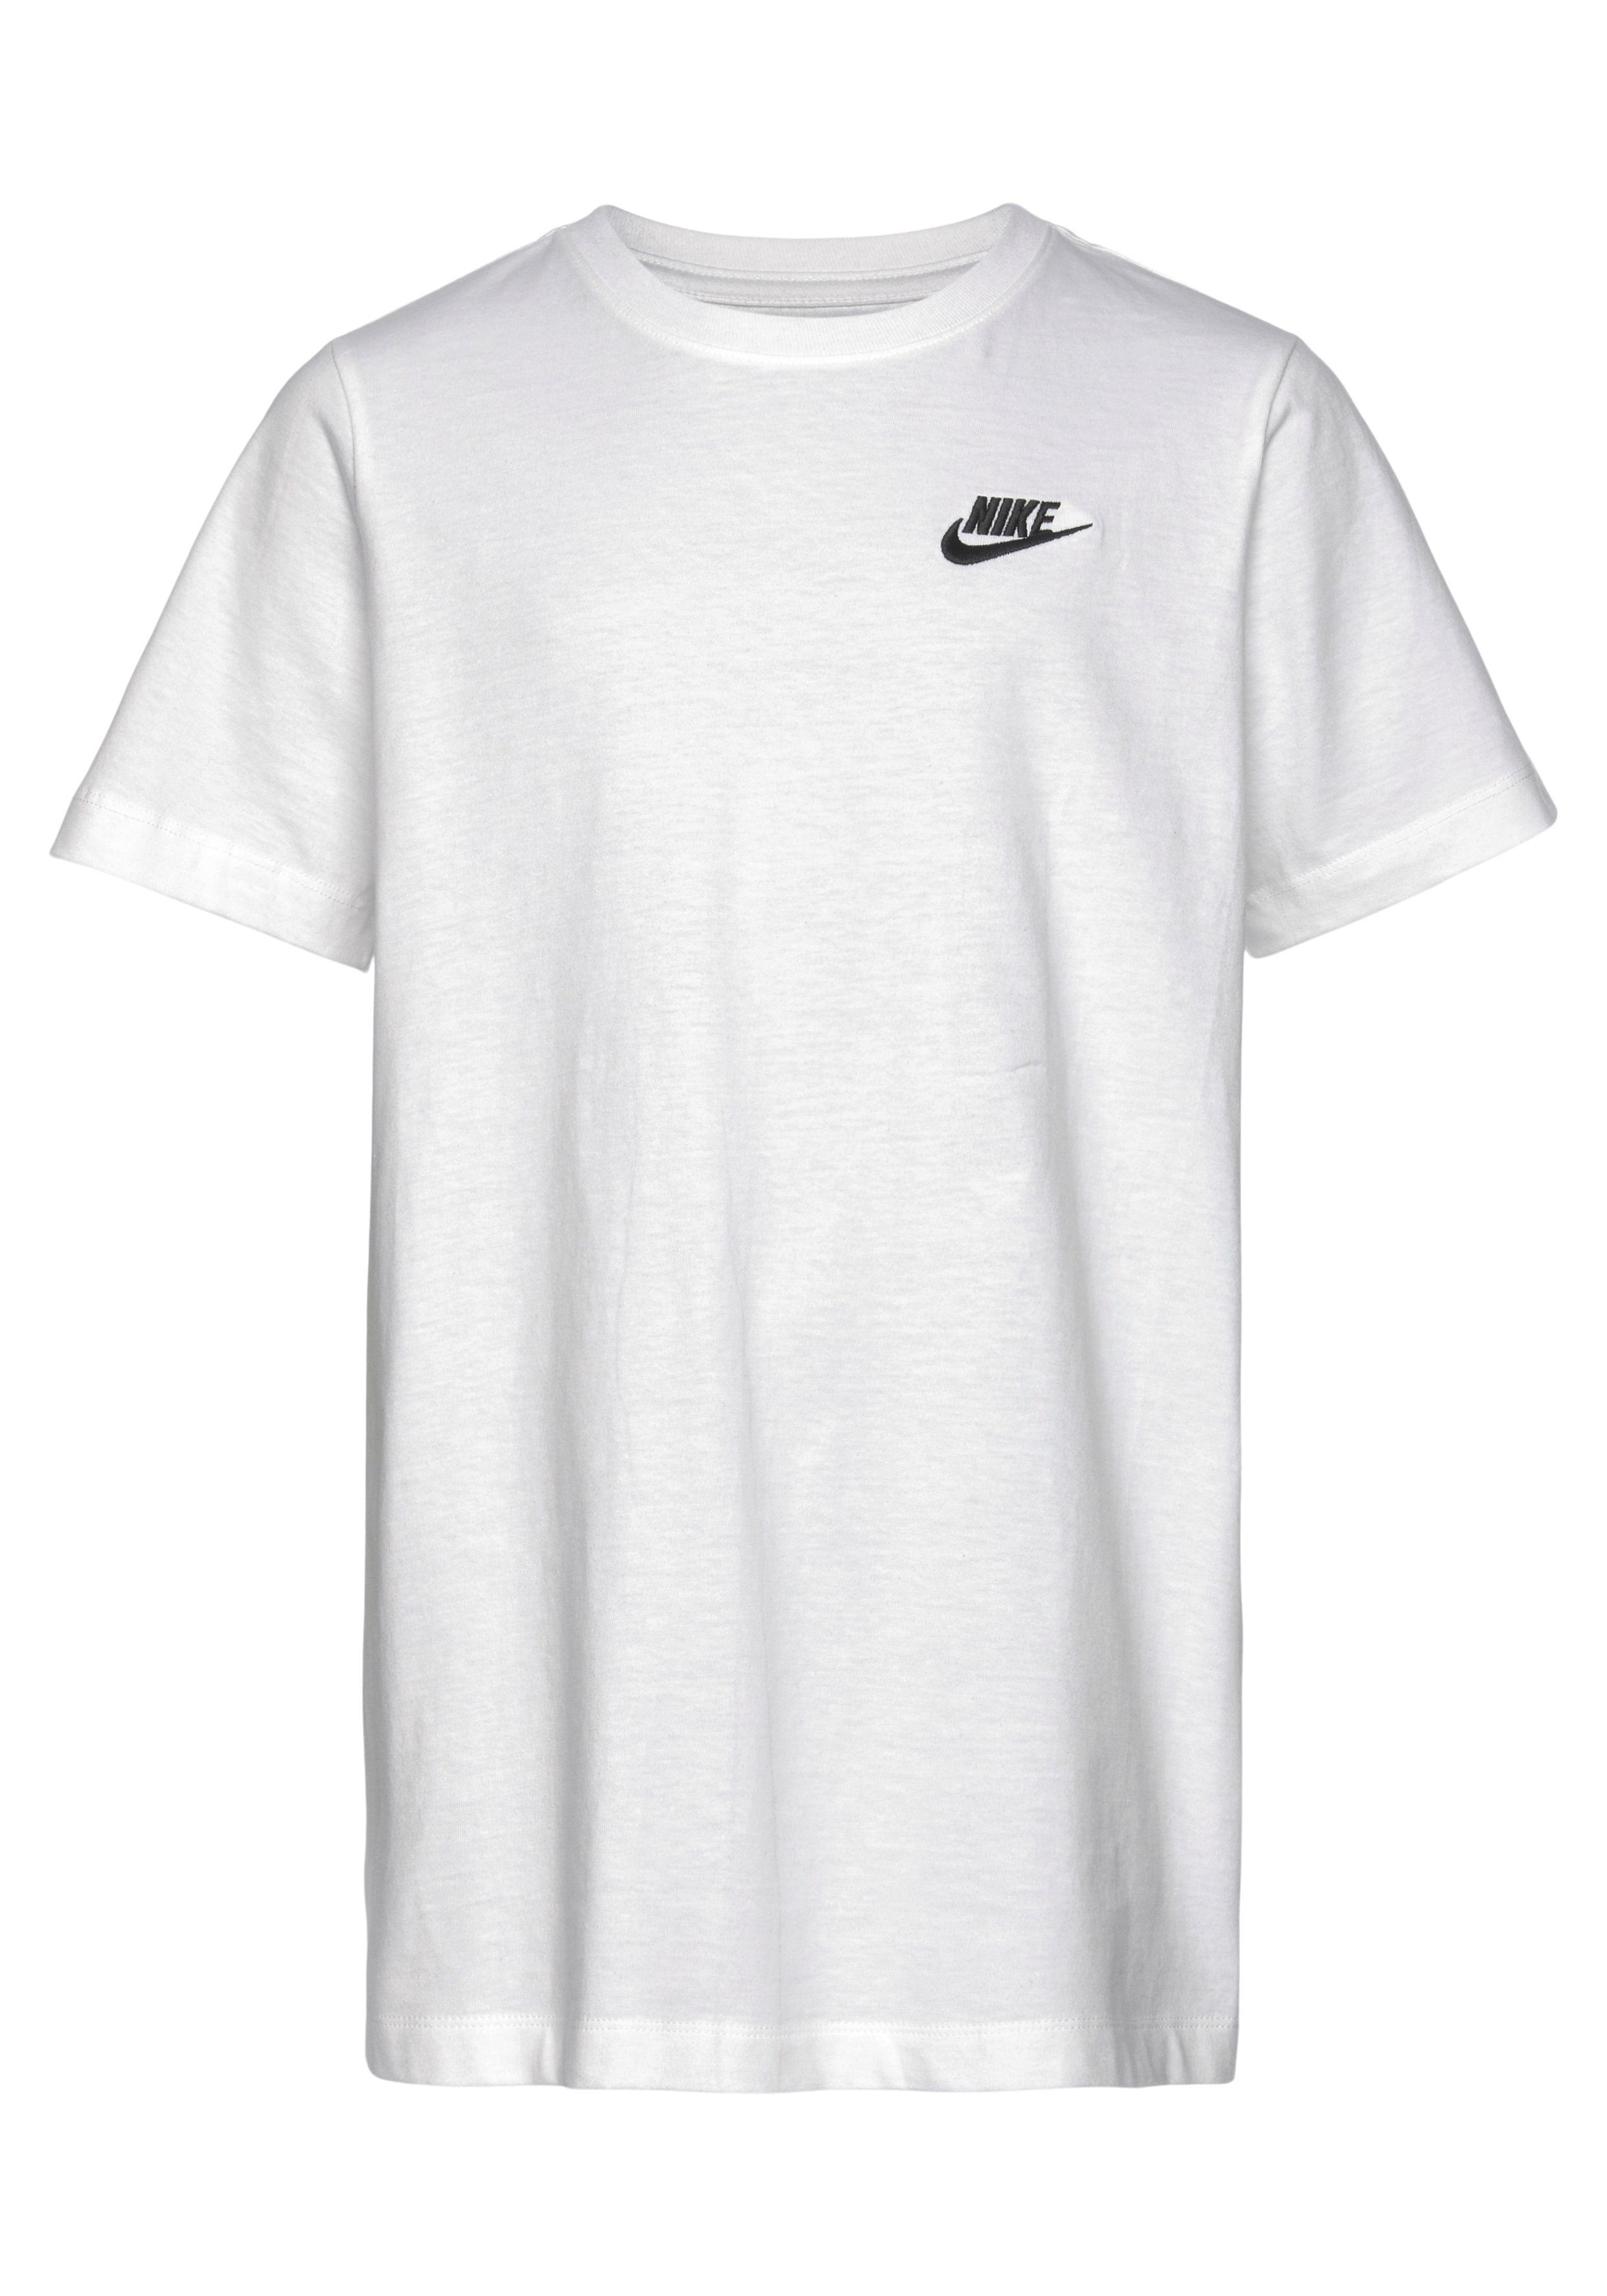 Sportswear Nike T-Shirt KIDS' weiß T-SHIRT BIG